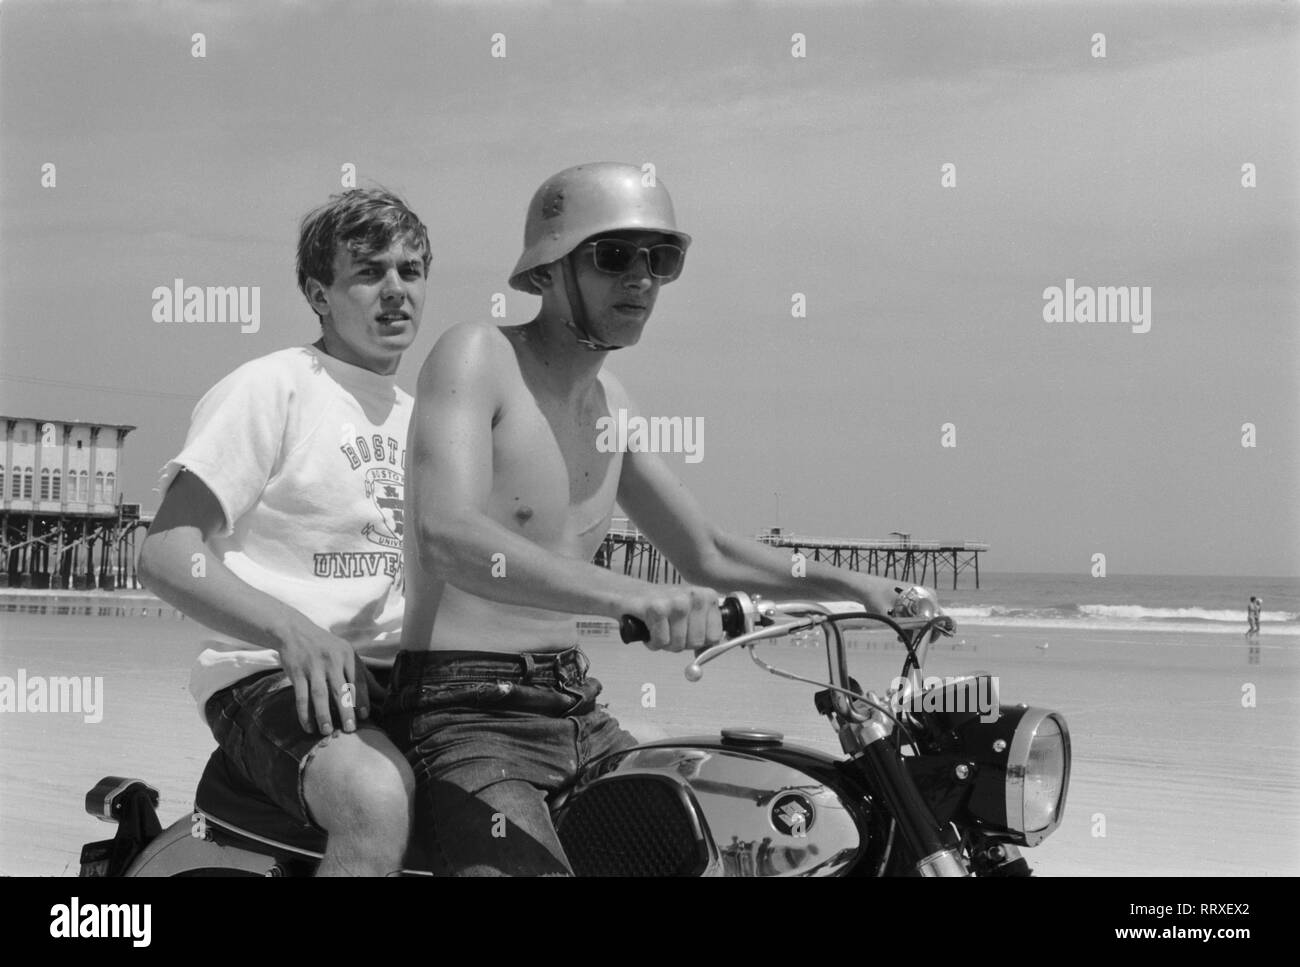 Menschen - Menschen, Motorrad, Strang, Helm, Stahlhelm, Sonnenbrille,  Suzuki bin Daytona Beach in Florida, USA 1959 Stockfotografie - Alamy